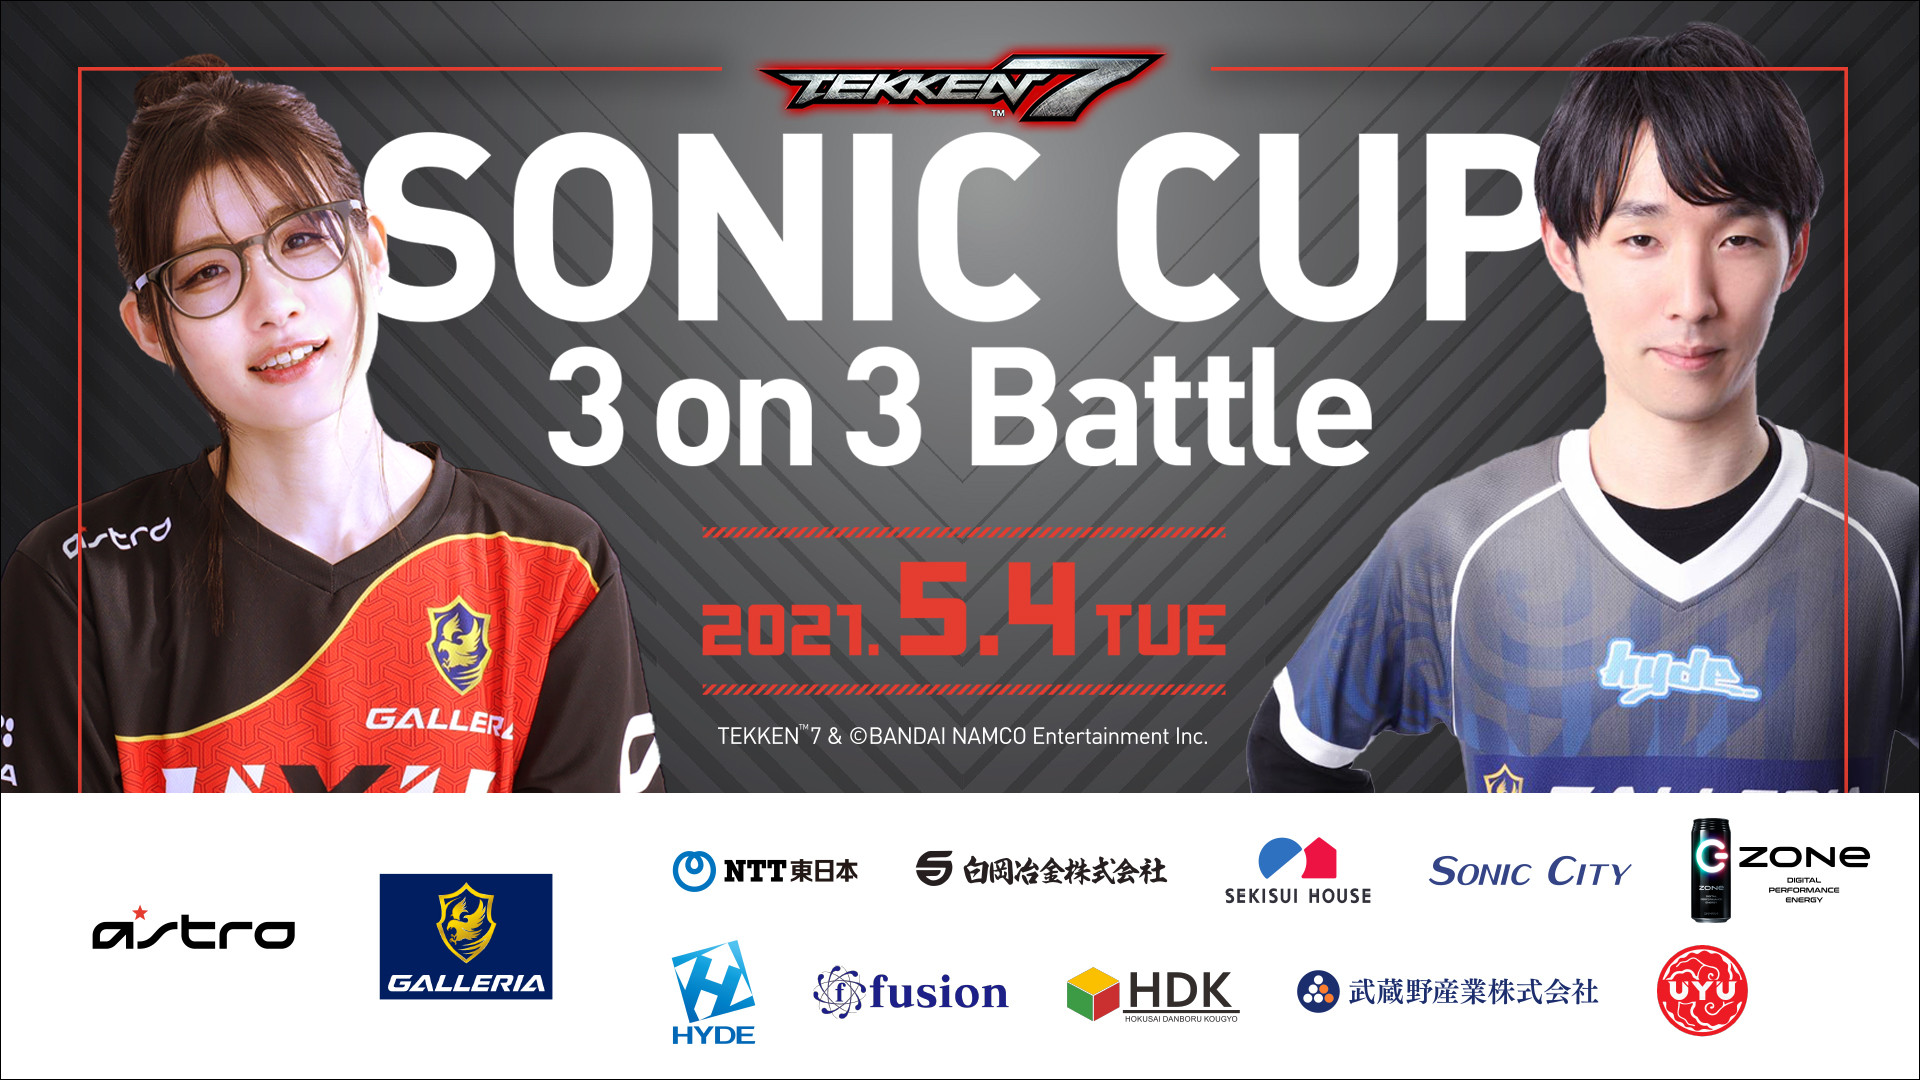 【大会情報】SONIC CUP 3on3 Battle 予選トーナメント【2021年4月29日】